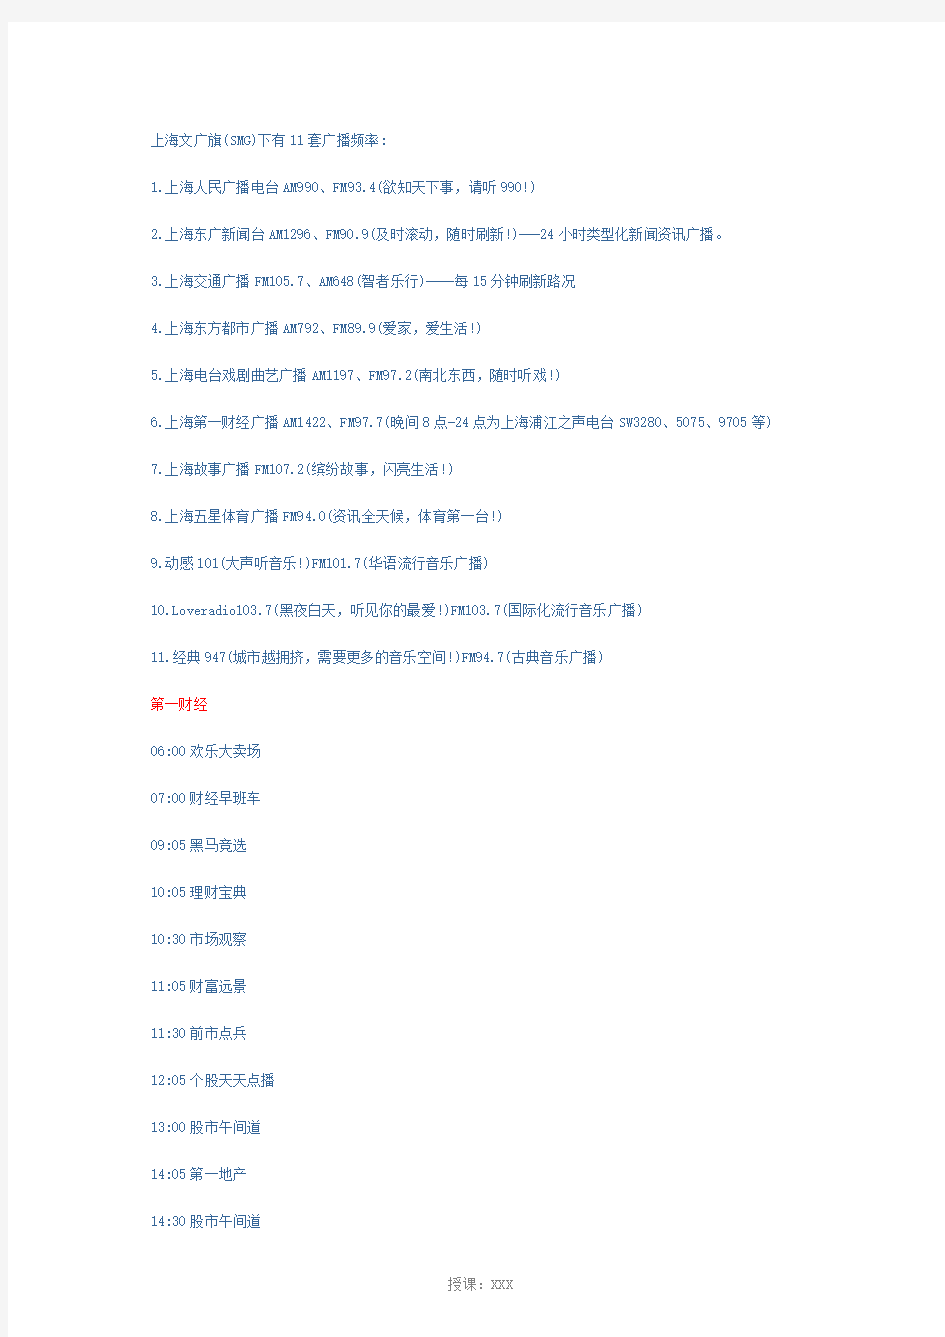 上海广播电台11套广播频道以及各个频道的节目时间表